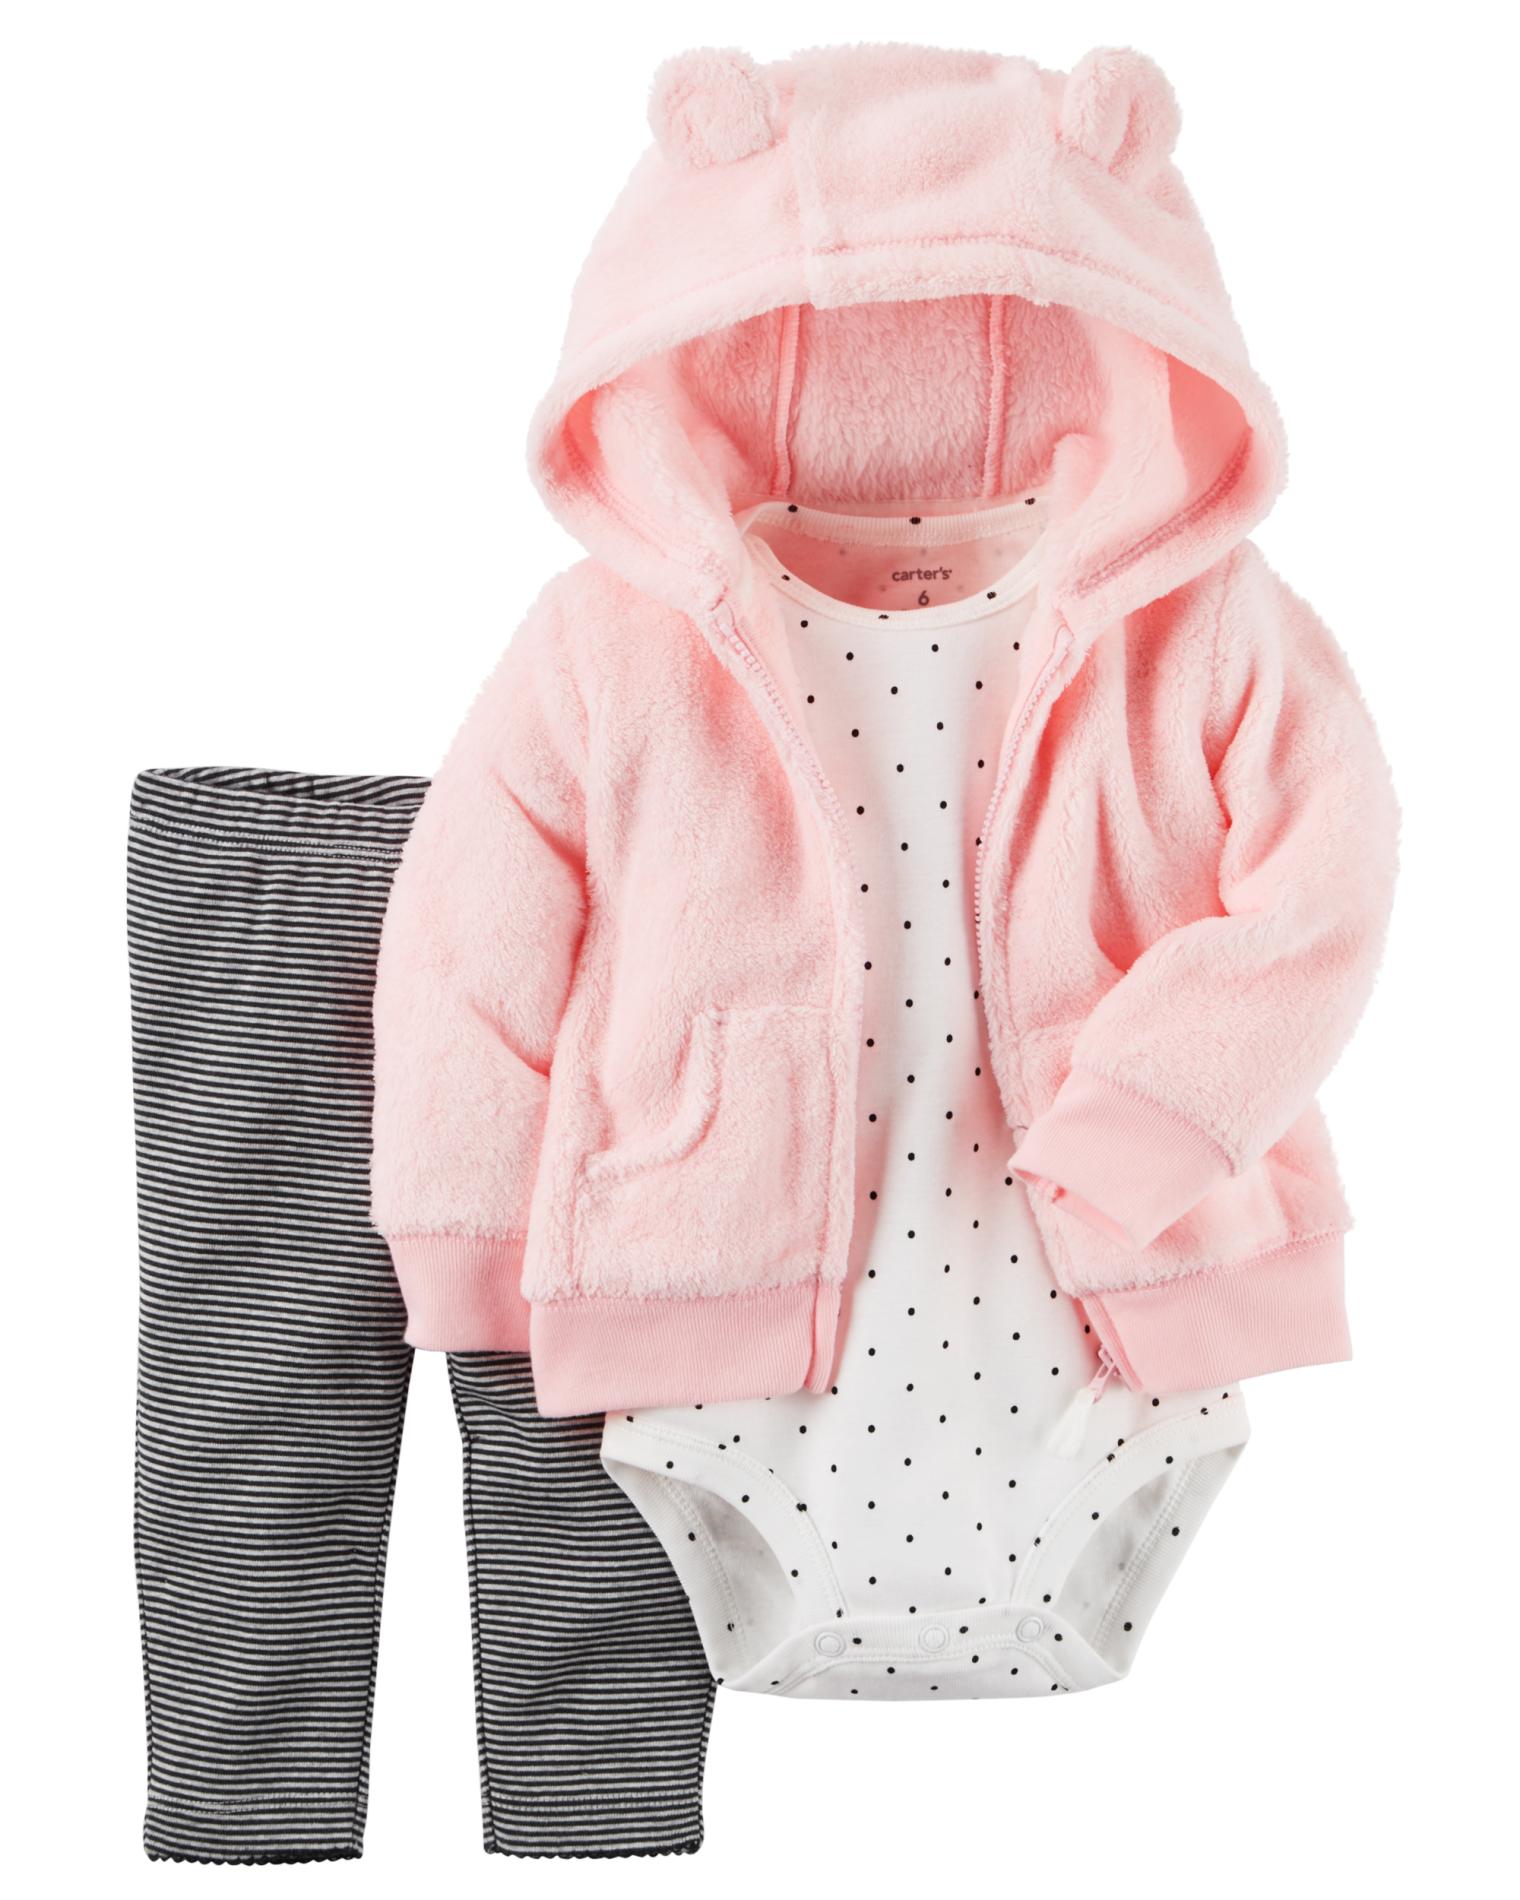 Carter's Newborn & Infant Girls' Hoodie Jacket, Bodysuit & Leggings - Polka Dot